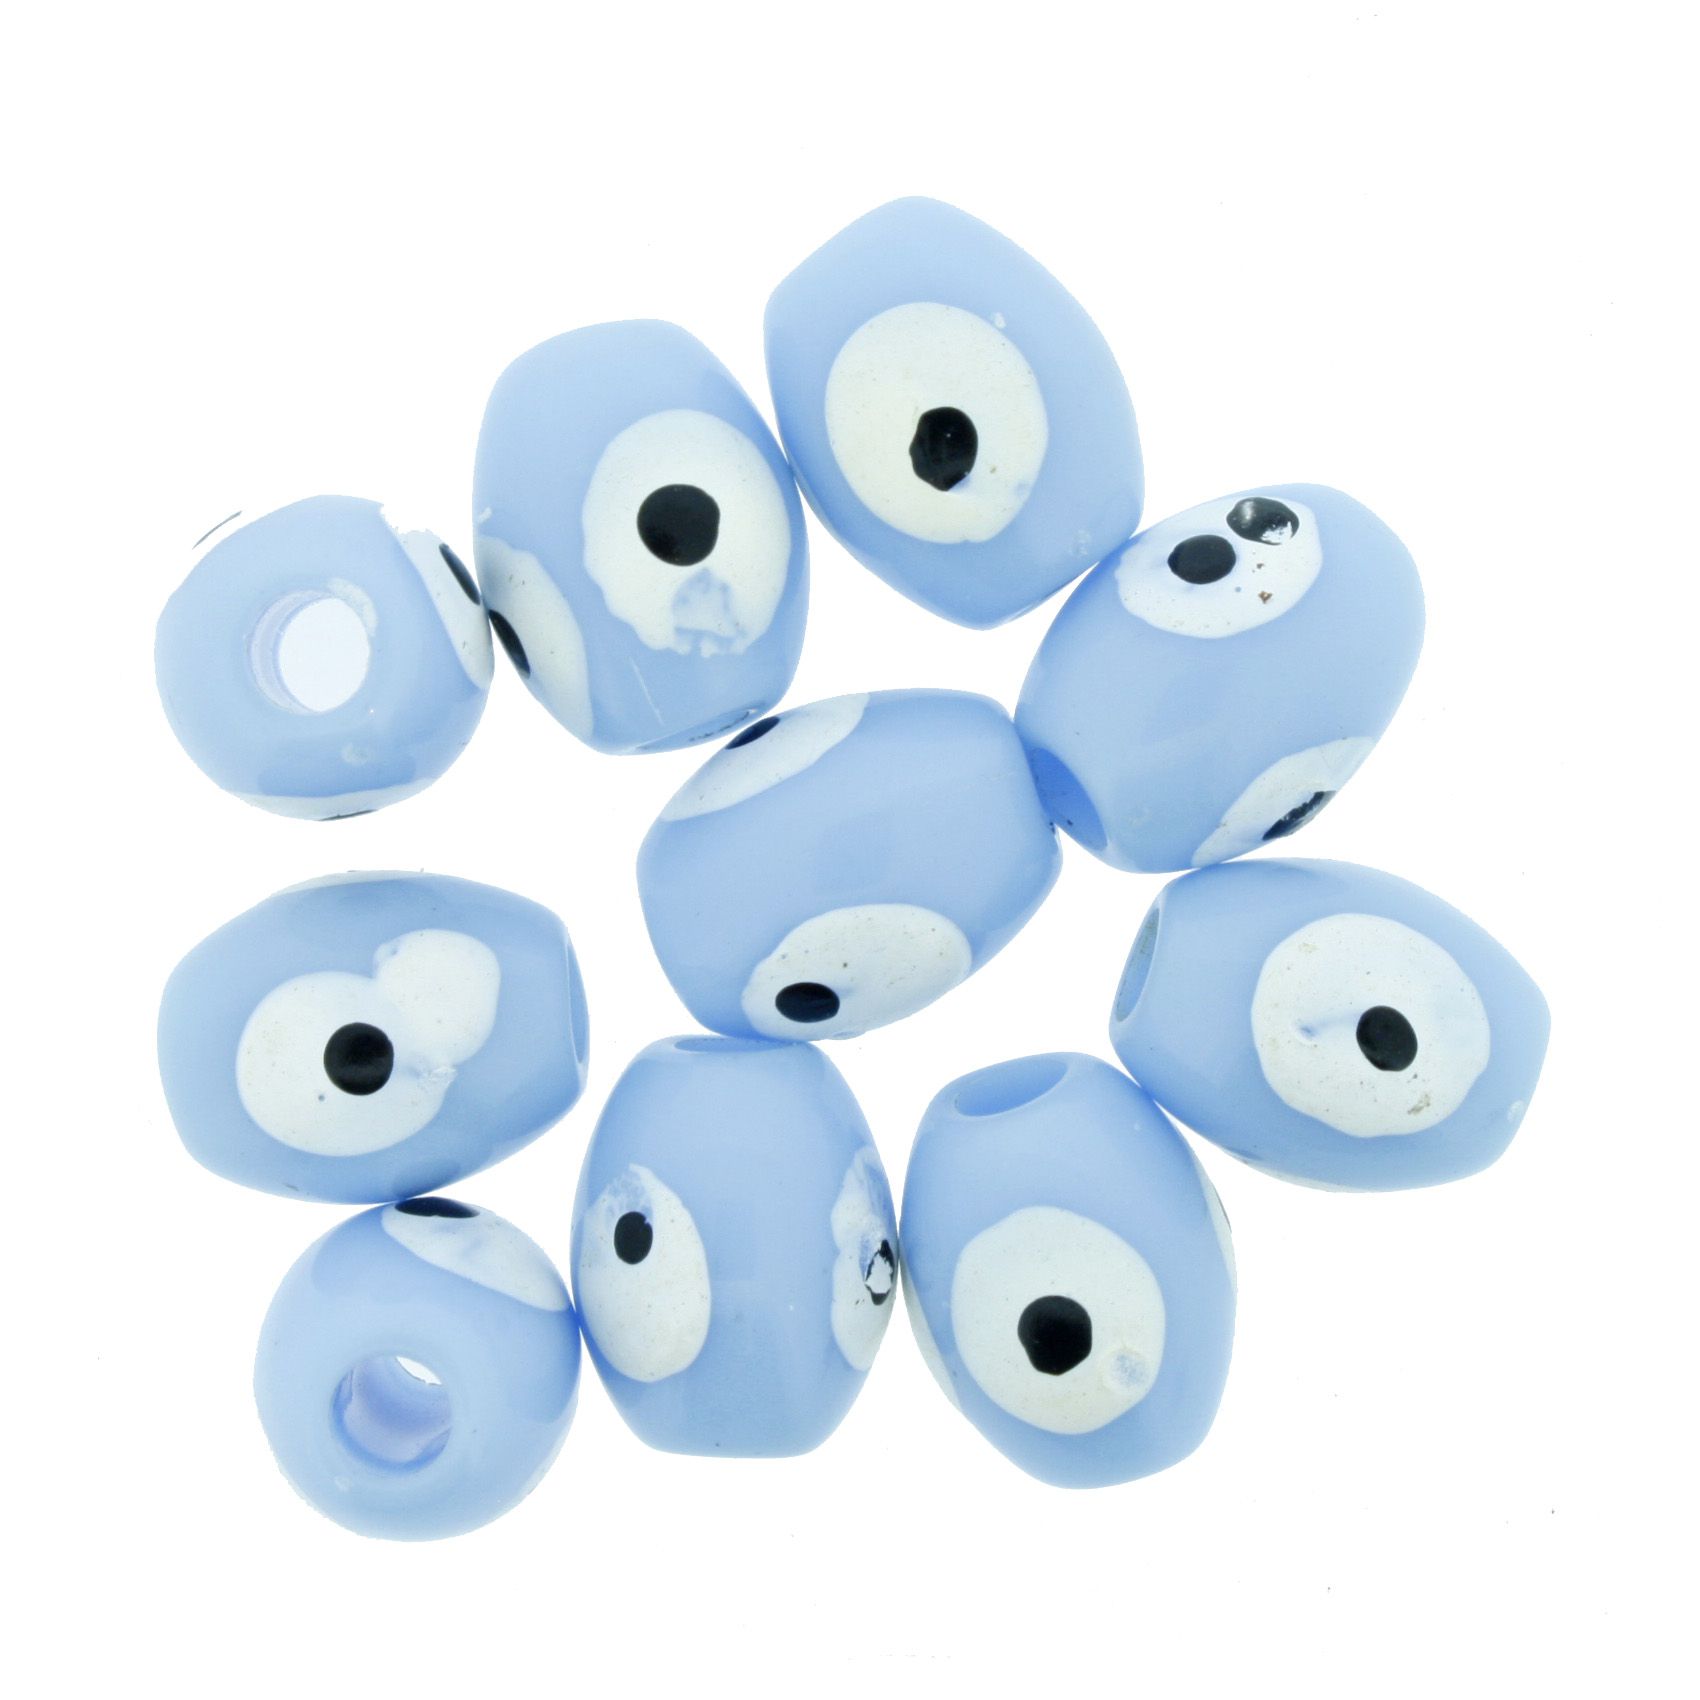 Olho Grego - Oval - Azul Claro - 13x10mm  - Stéphanie Bijoux® - Peças para Bijuterias e Artesanato